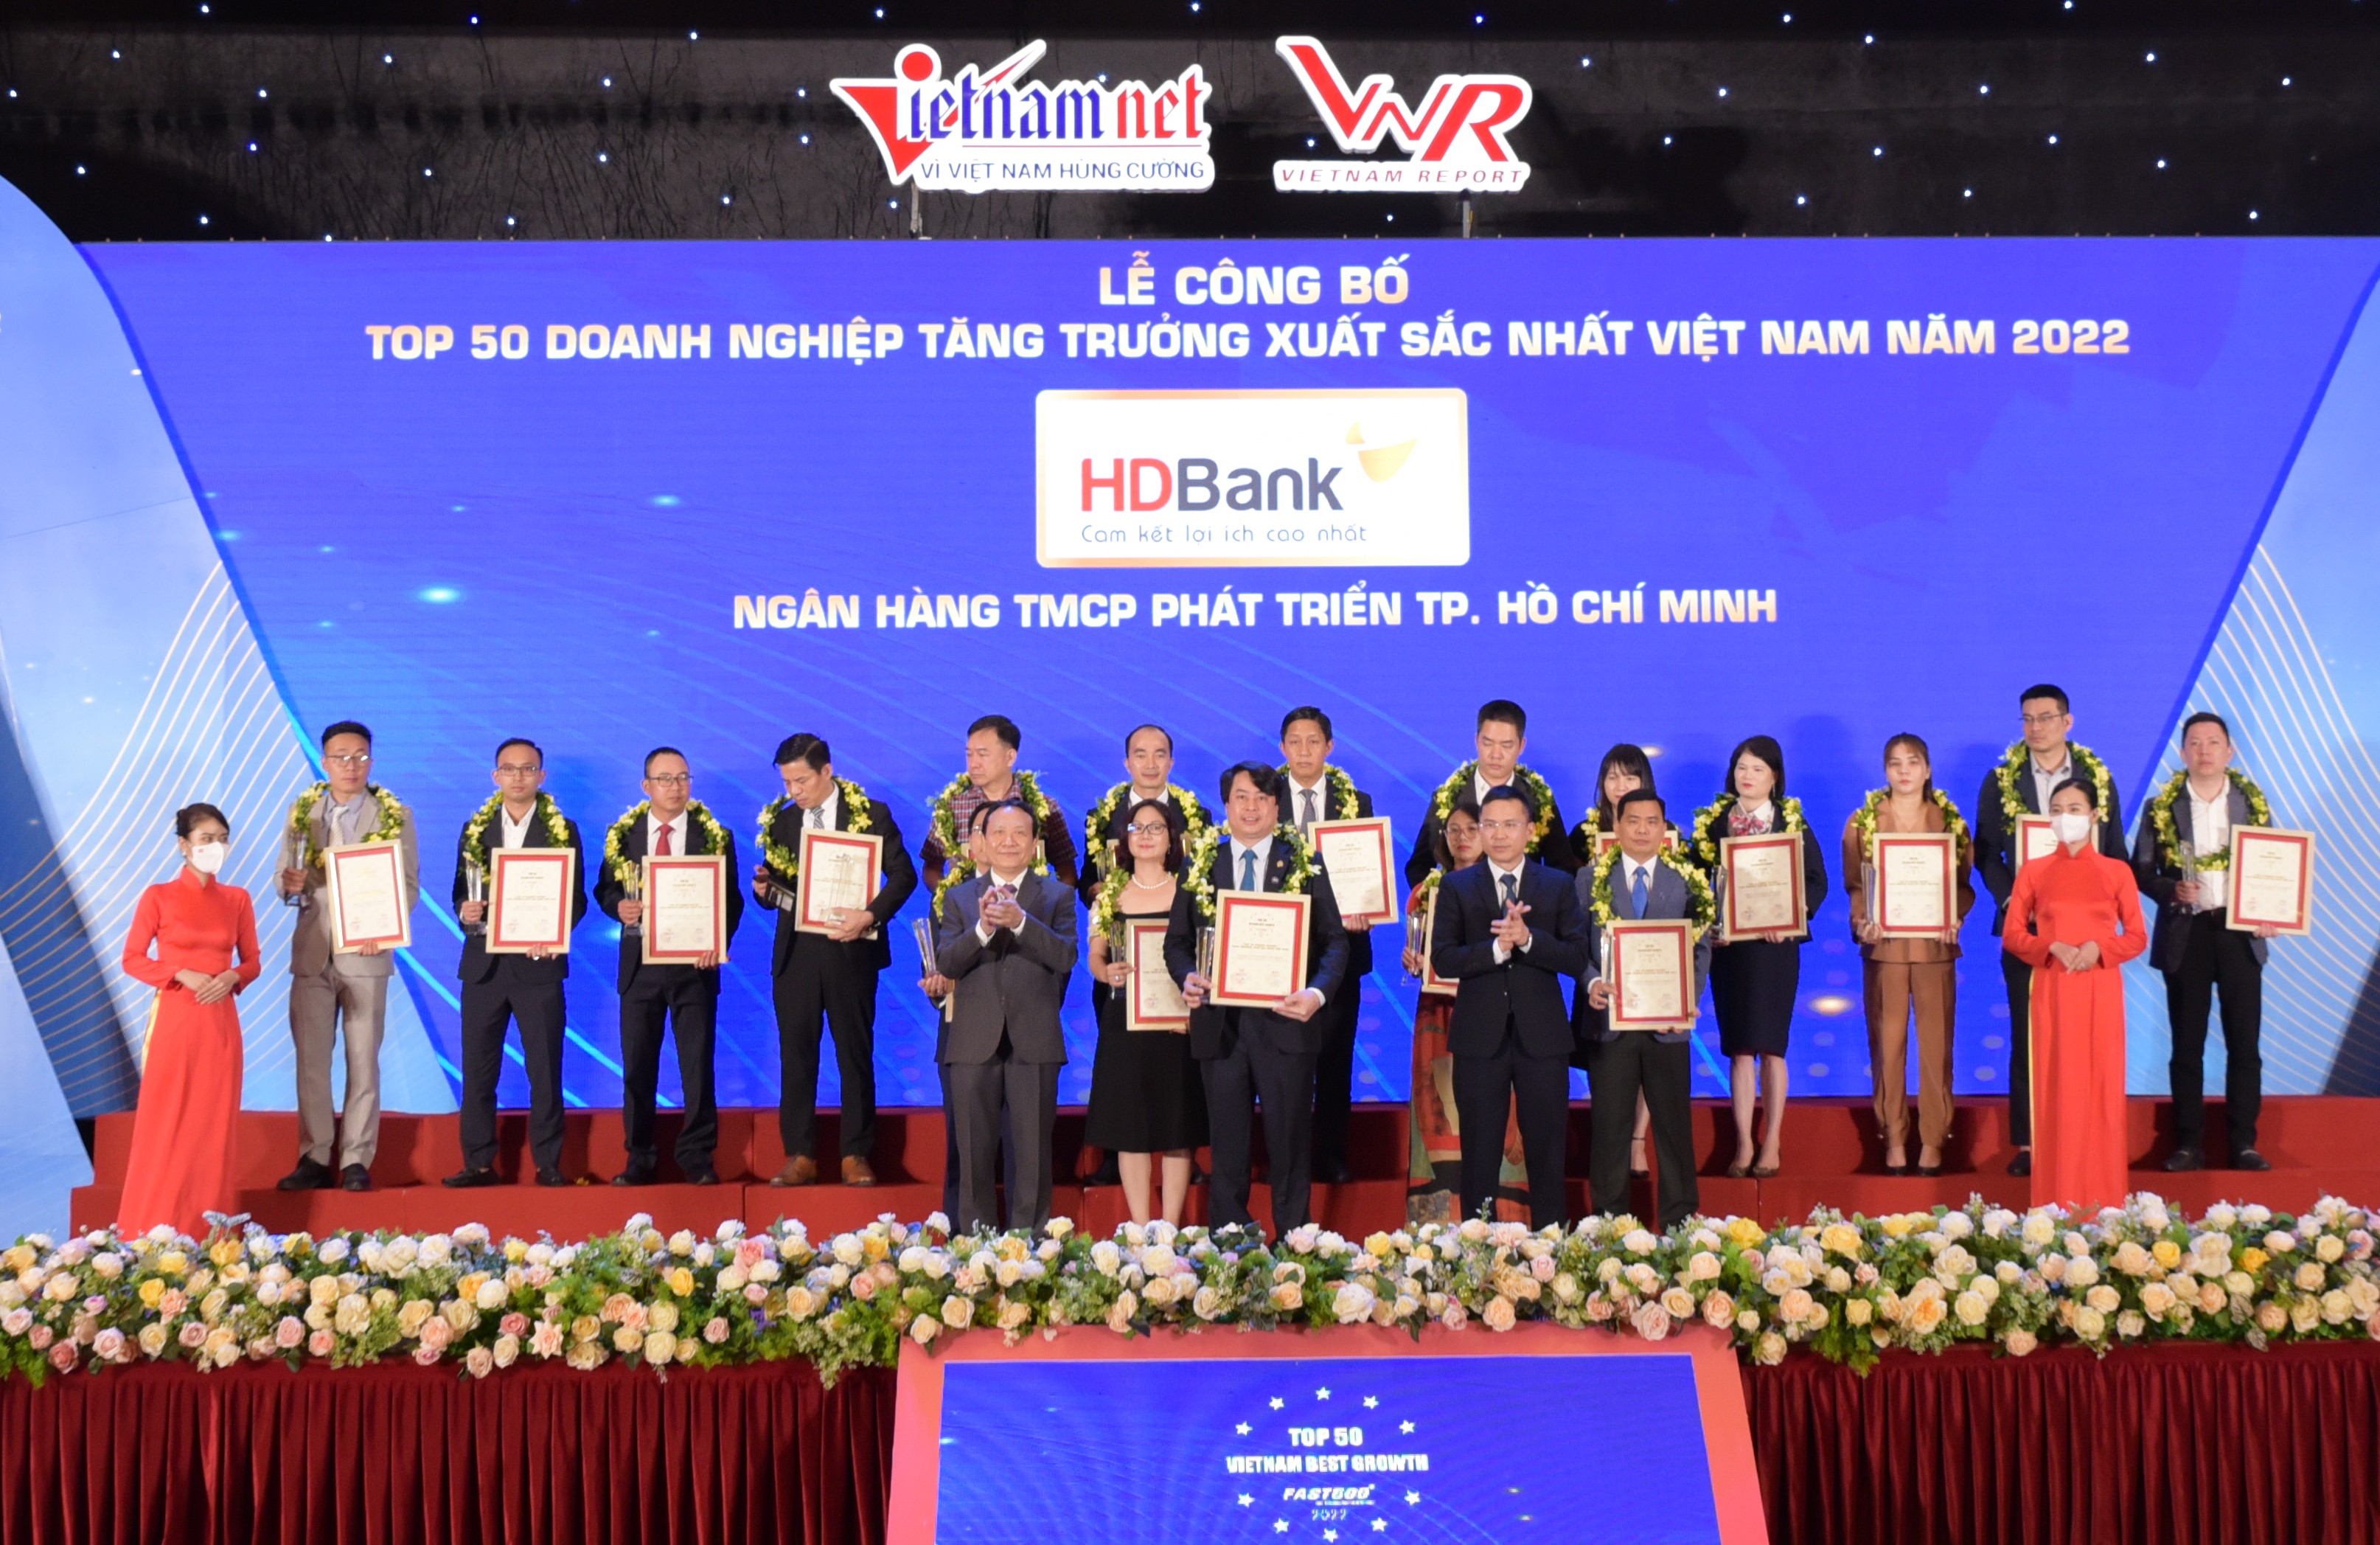 Top Doanh nghiệp tăng trưởng xuất sắc nhất Việt Nam 2022 vinh danh HDBank